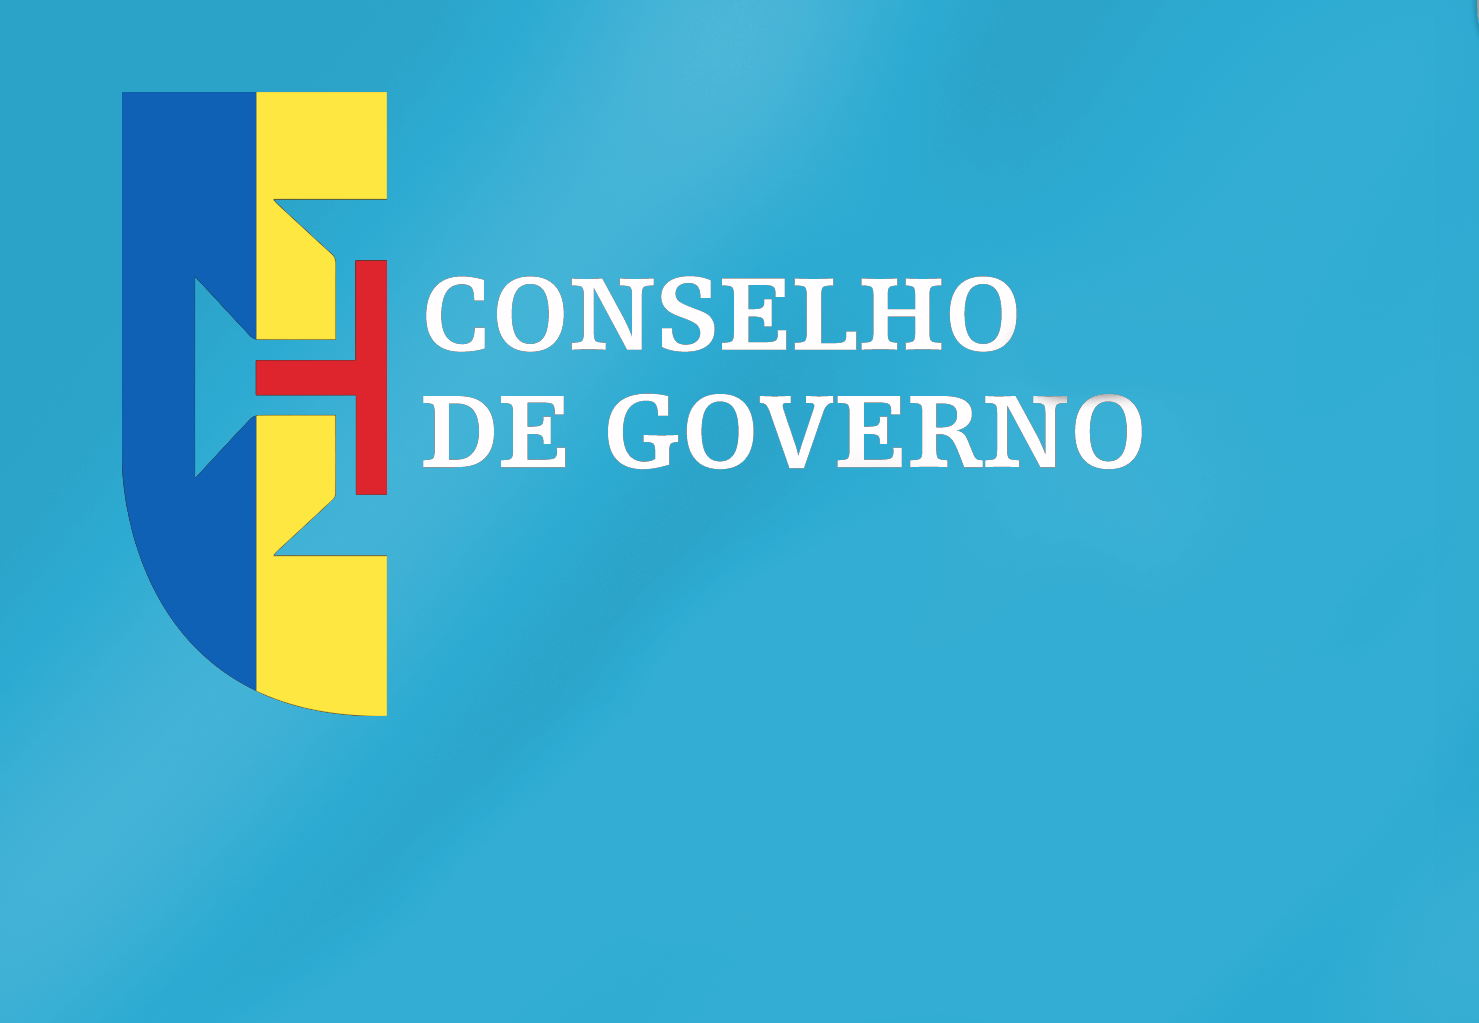 Conclusões Conselho de Governo - 12 de maio de 2022